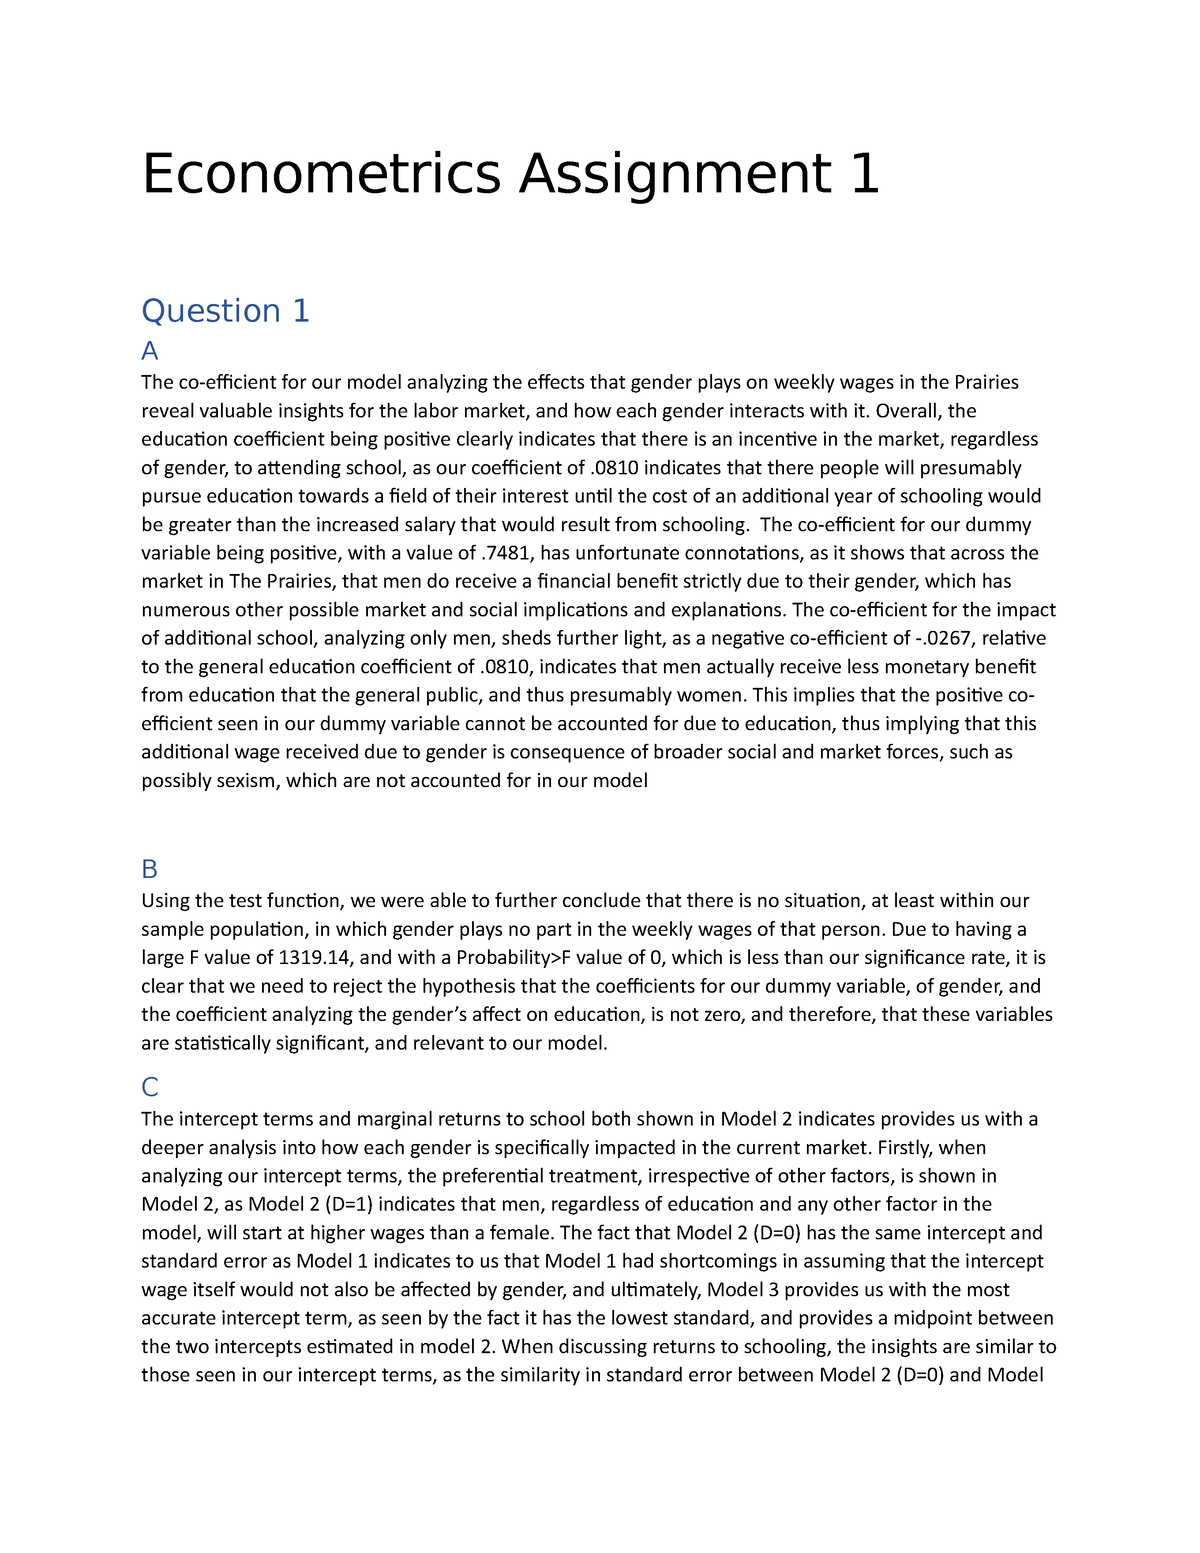 random assignment econometrics